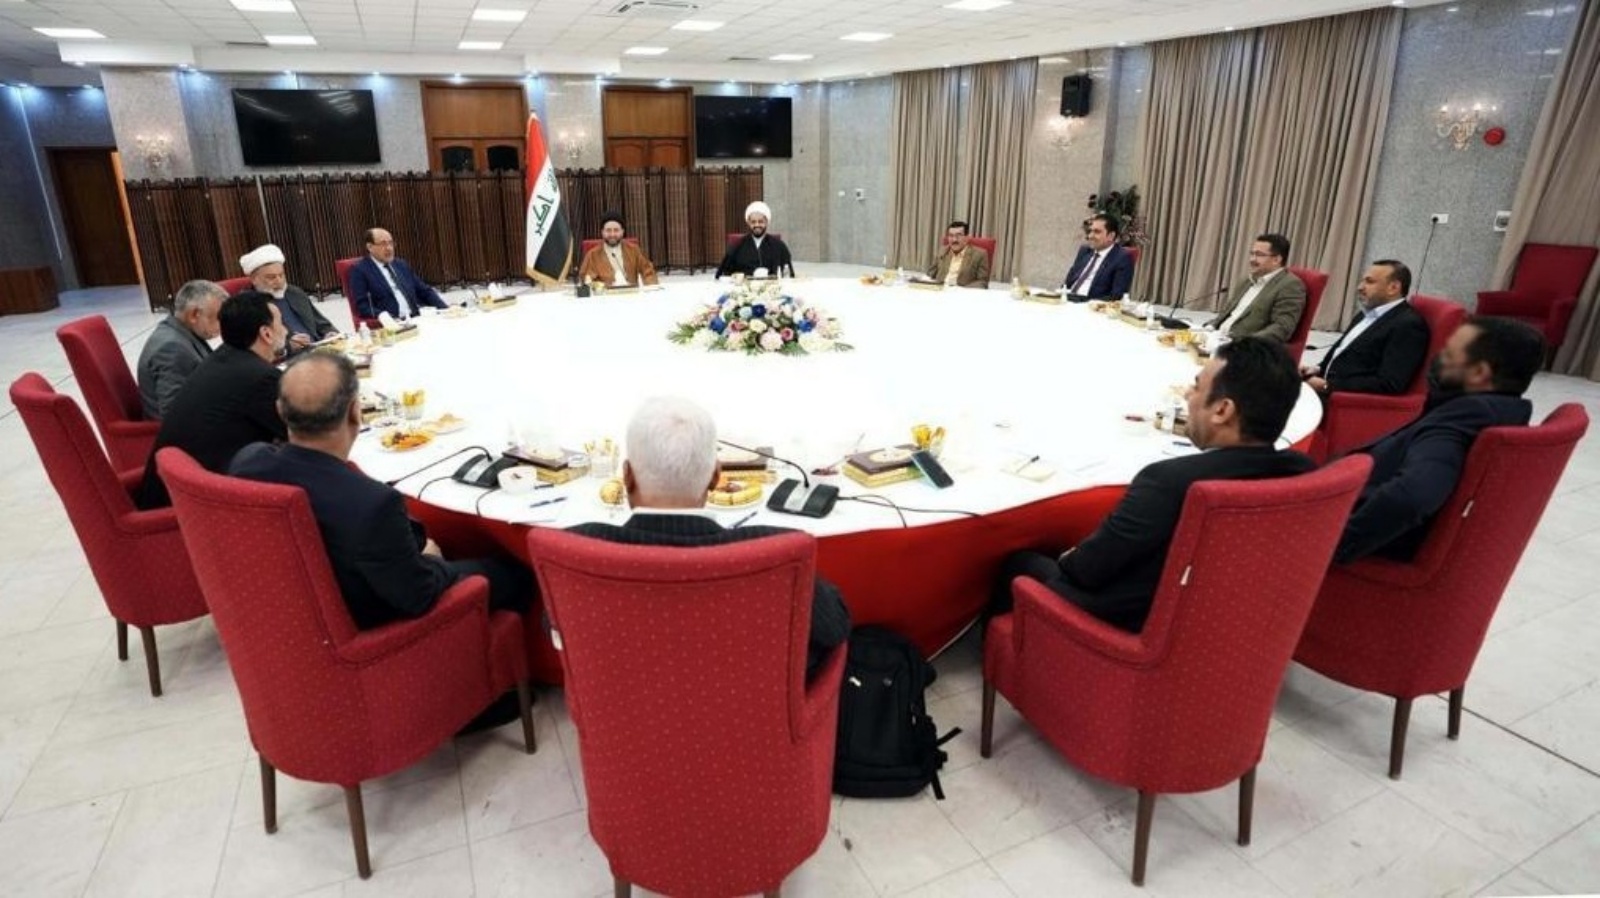 قادة الإطار التنسيقي للقوى الشيعية السياسية العراقية الموالية لإيران خلال اجتماع سابق (تويتر)